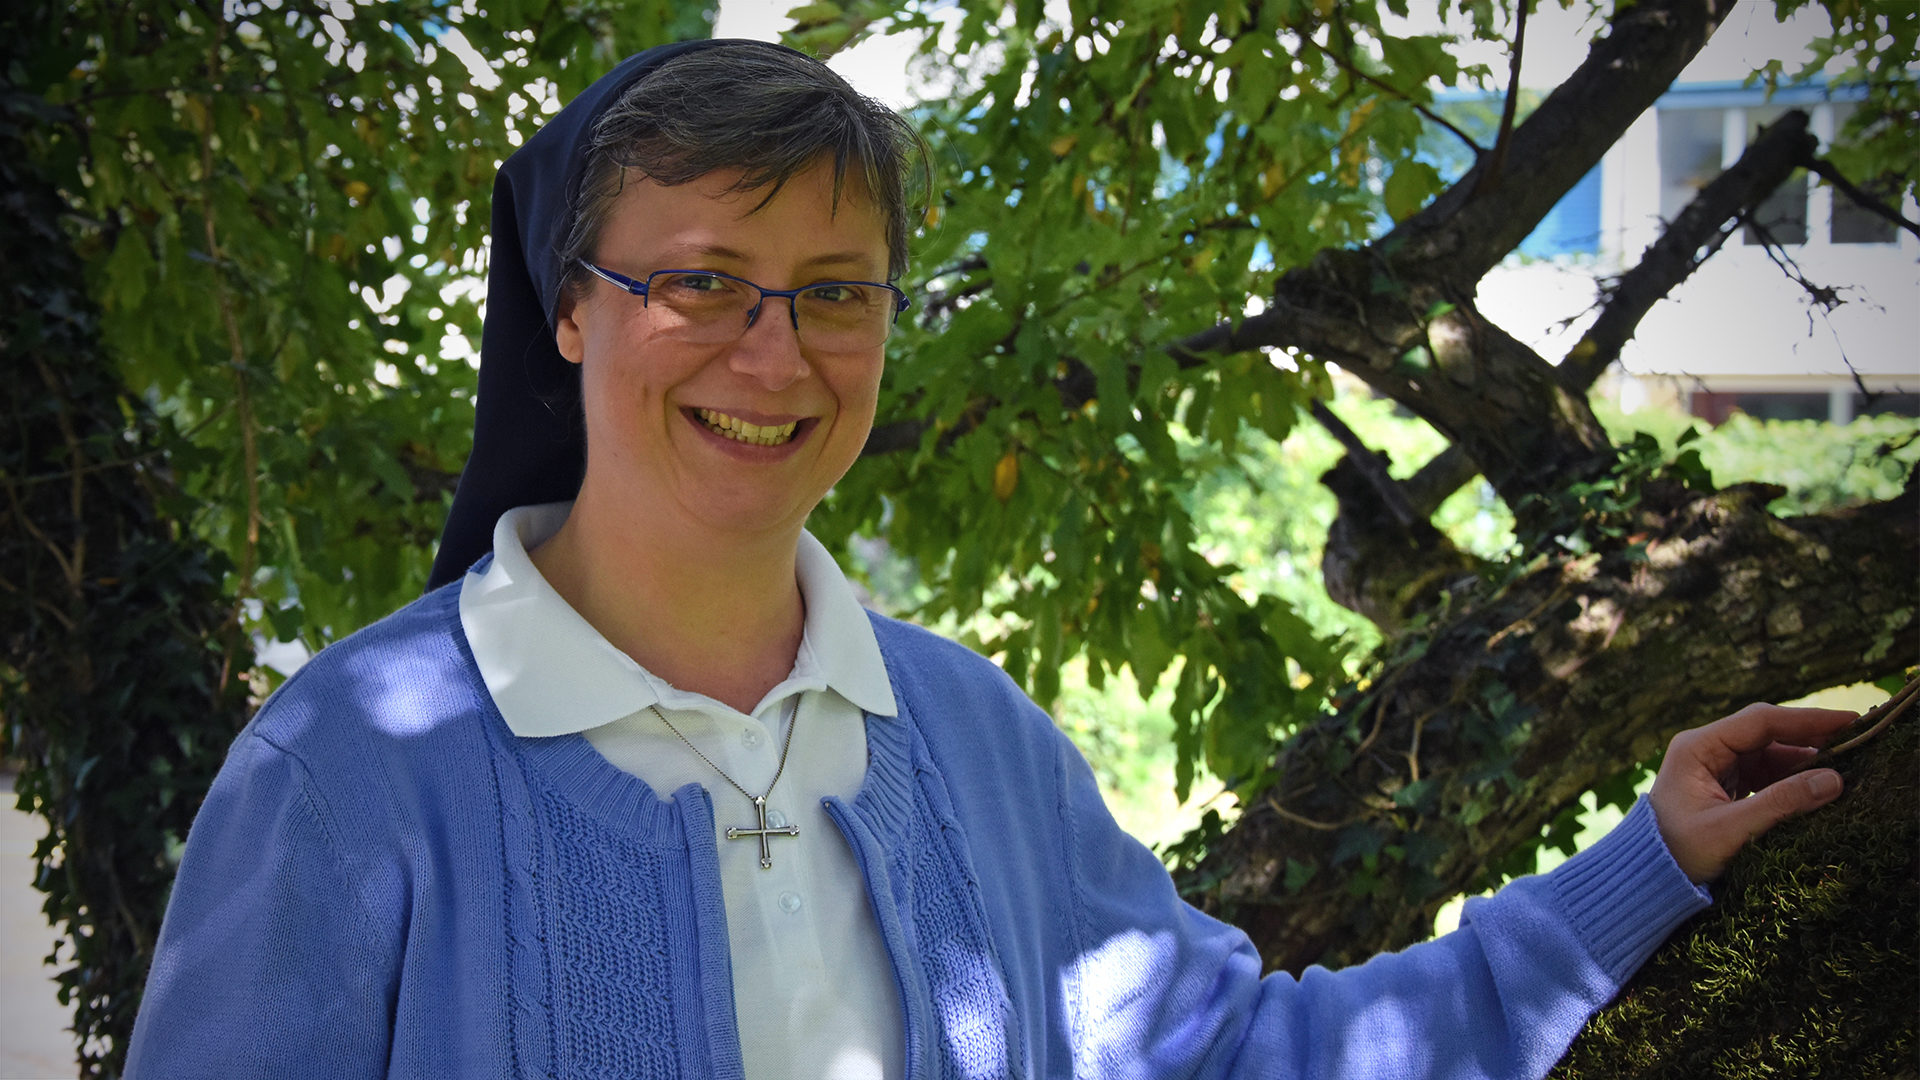 Sœur Daniela Ardizzoni, nommée supérieure générale des Sœurs de Saint-Maurice le 30 août 2018 | © Grégory Roth